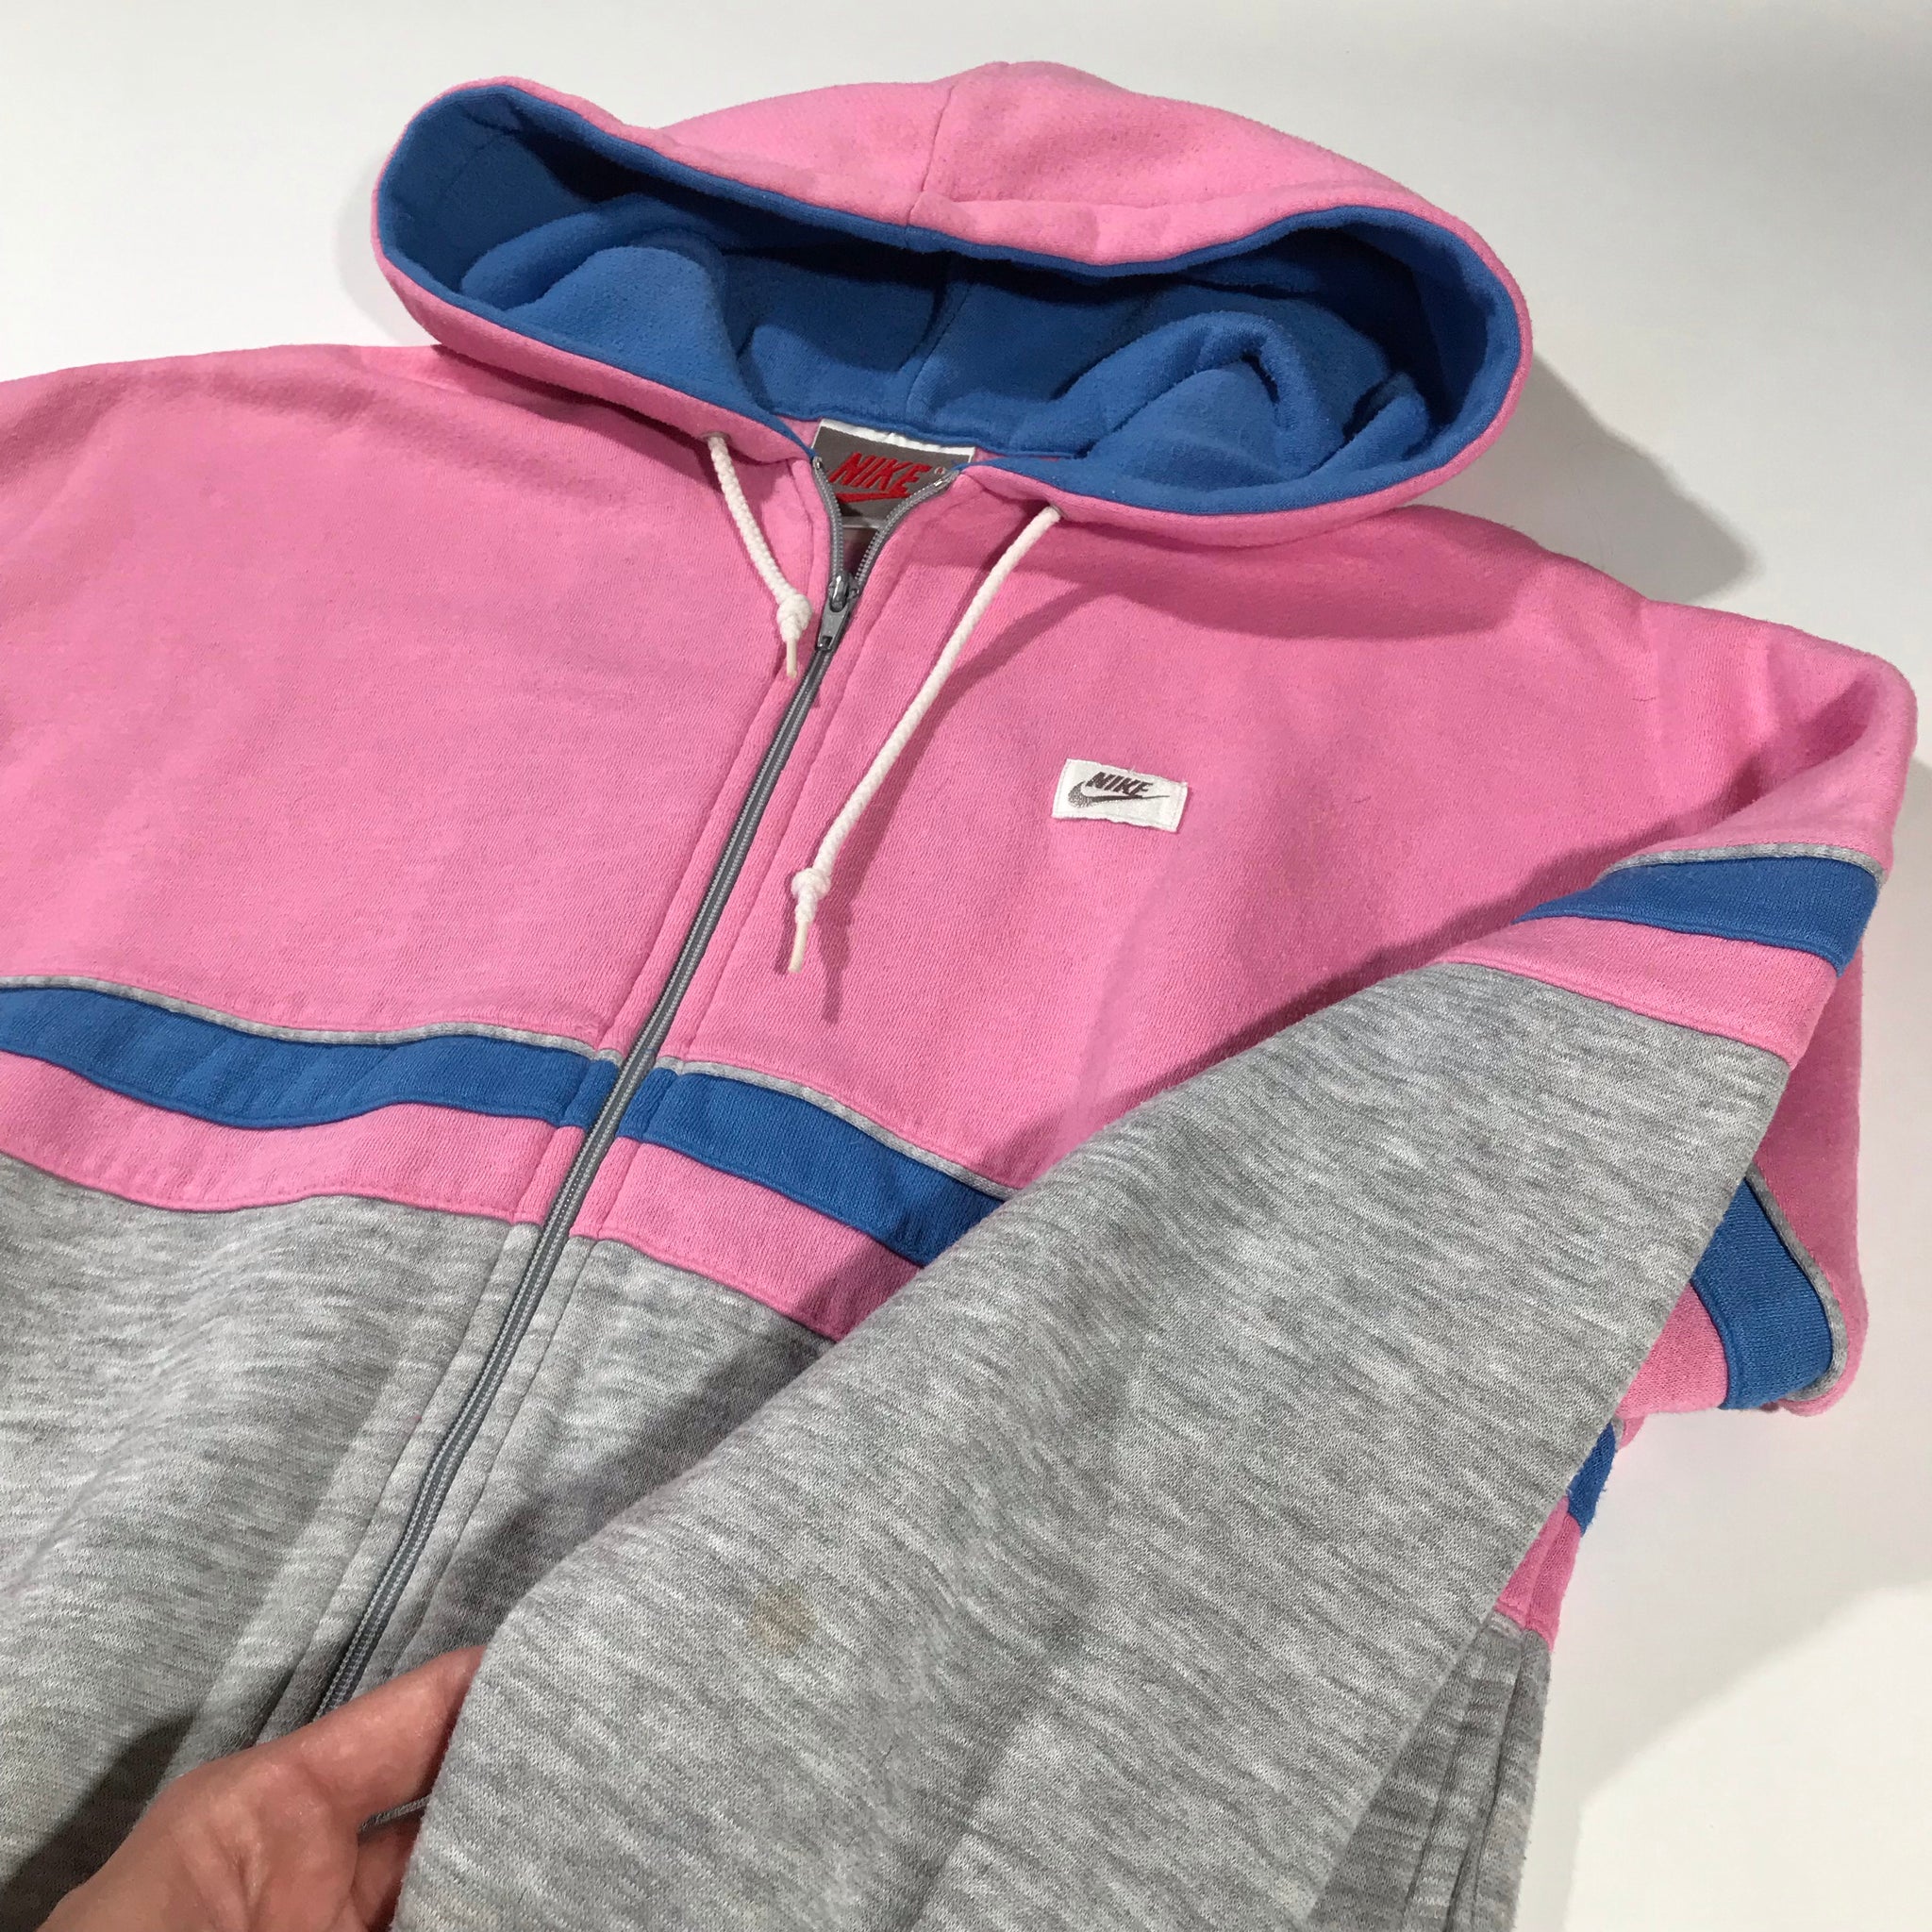 Nike zip up sweatshirt. ladies medium.